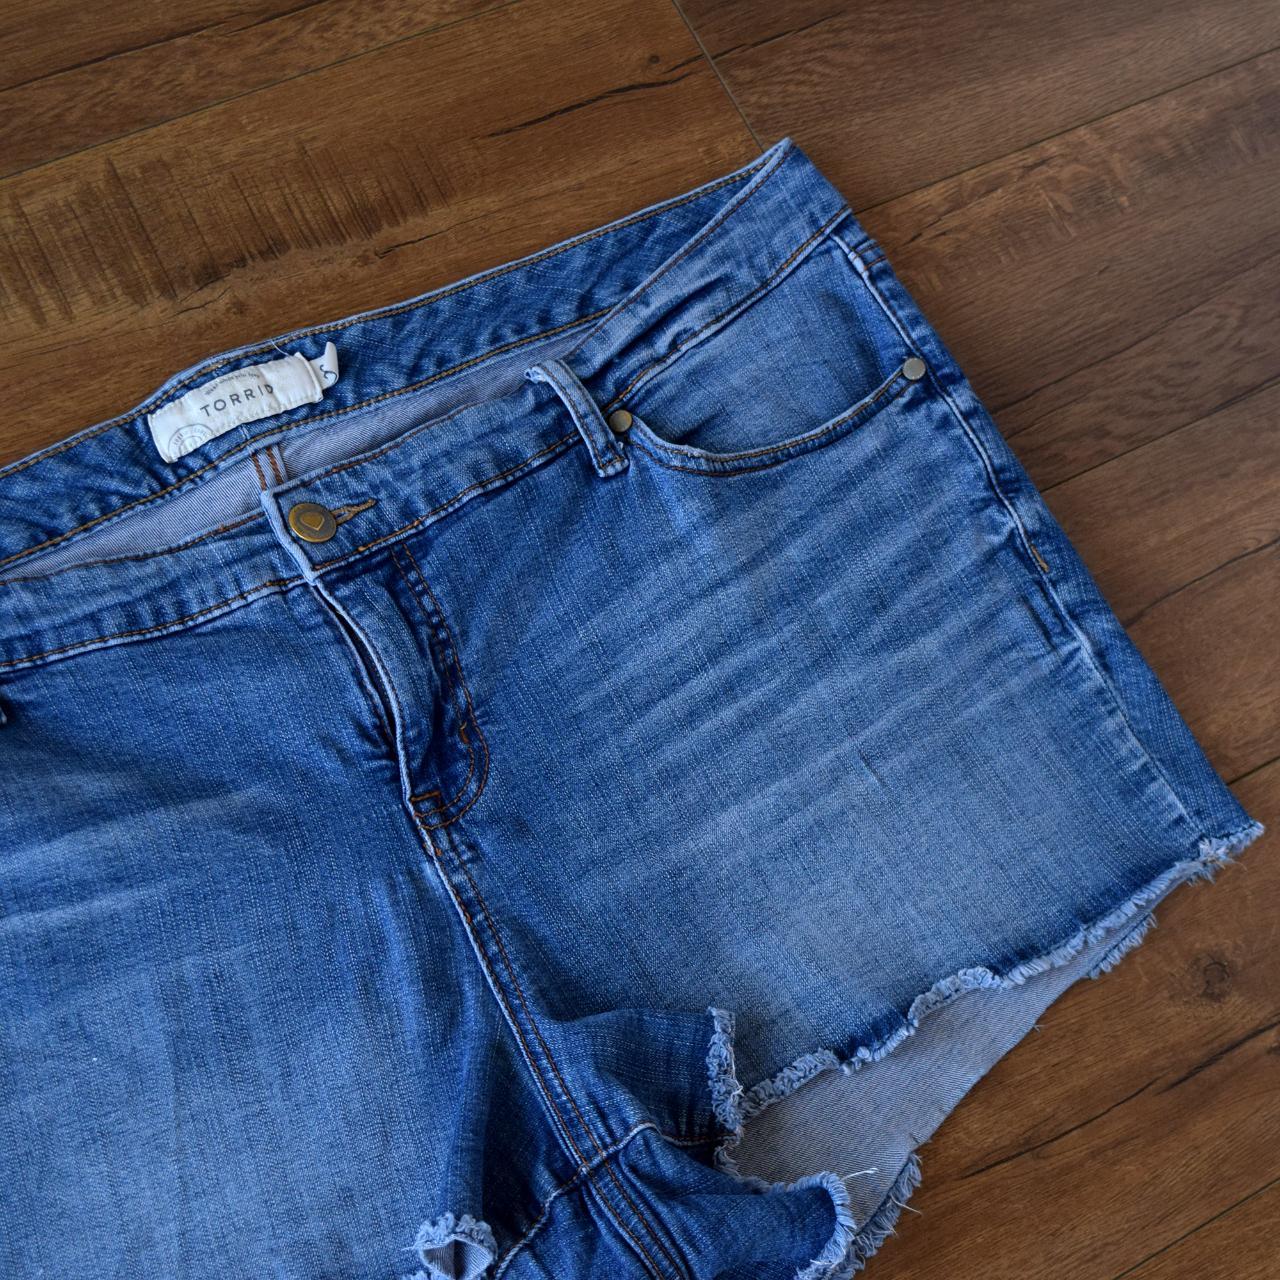 Torrid short denim shorts frayed hem plus size jean... - Depop